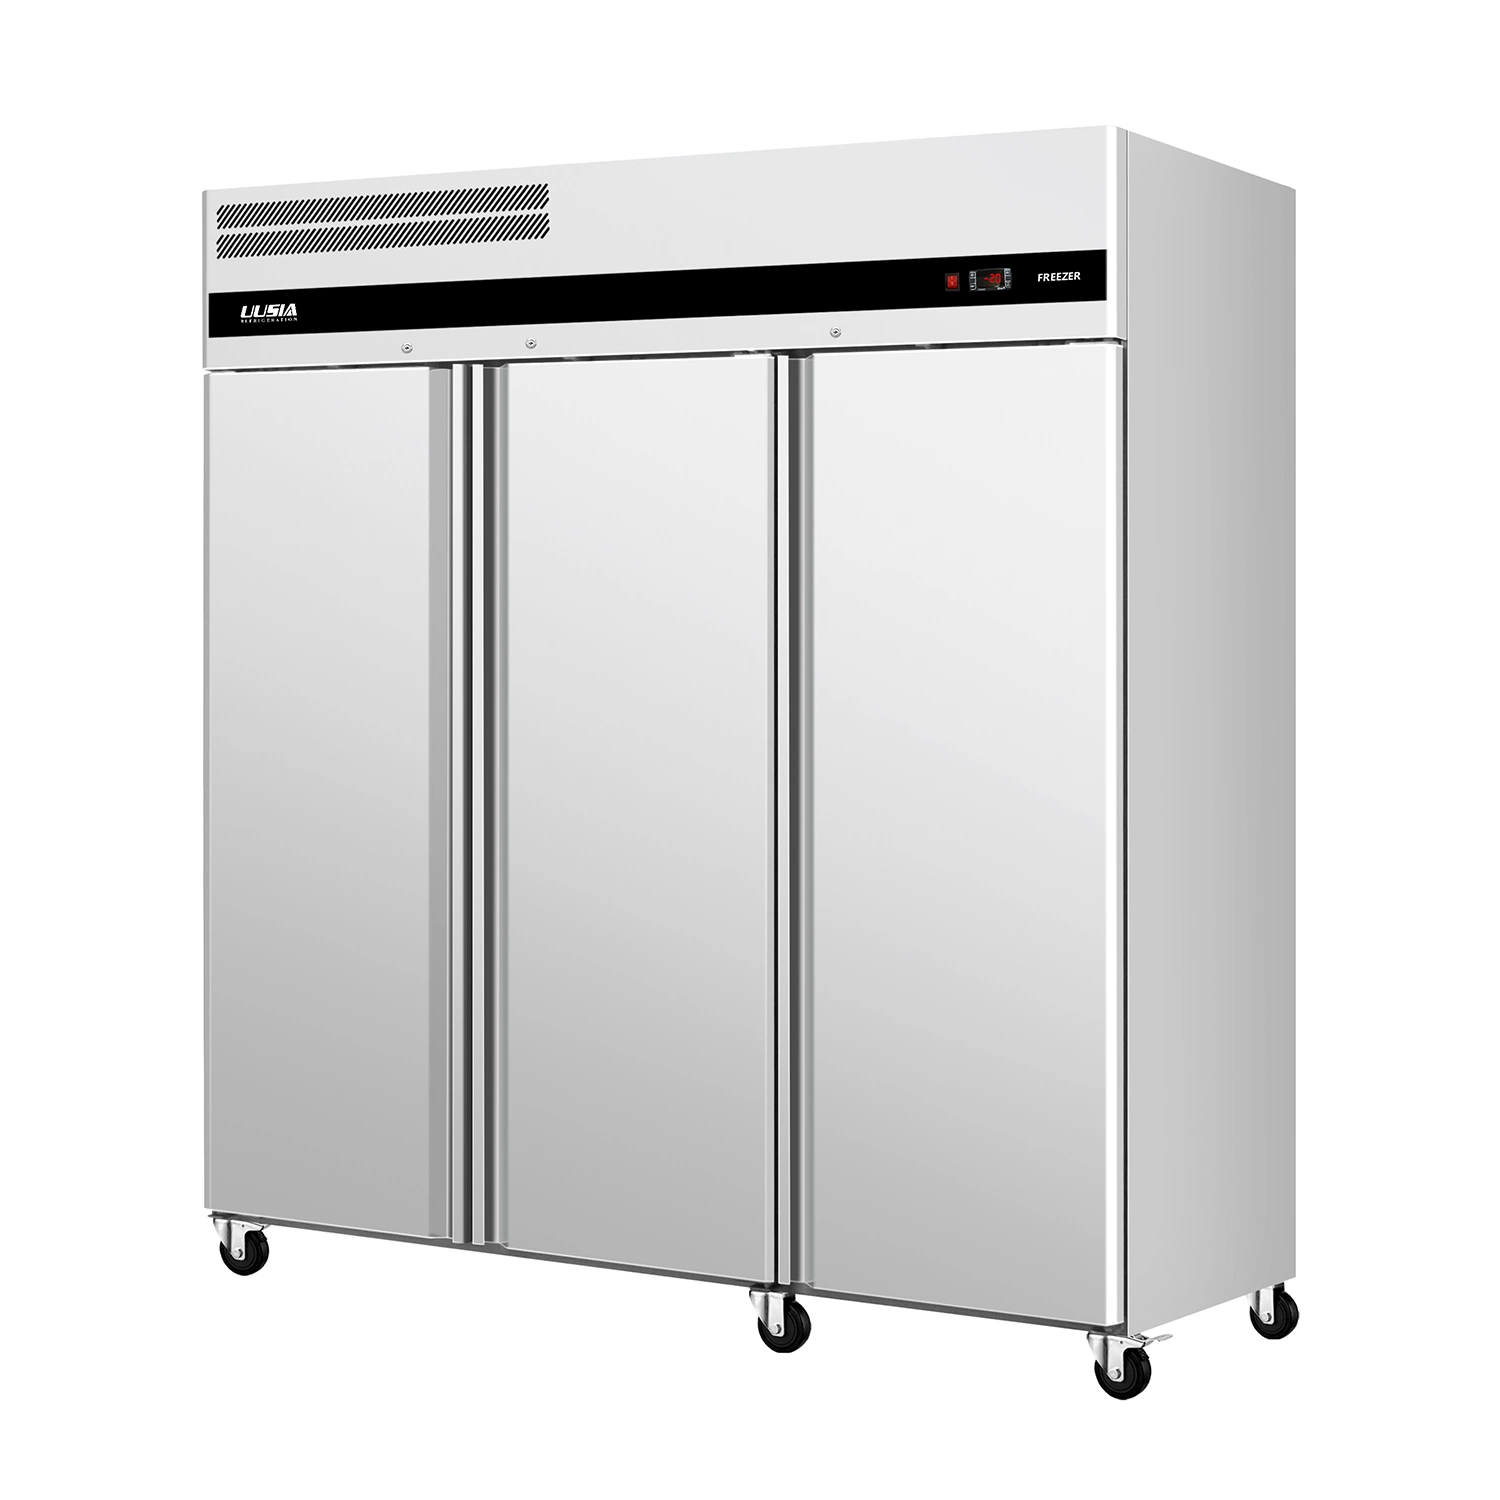 -22 градусов C высокого качества нержавеющая сталь три двери вертикальный холодильник в вертикальном положении охладитель морозильную камеру на кухне